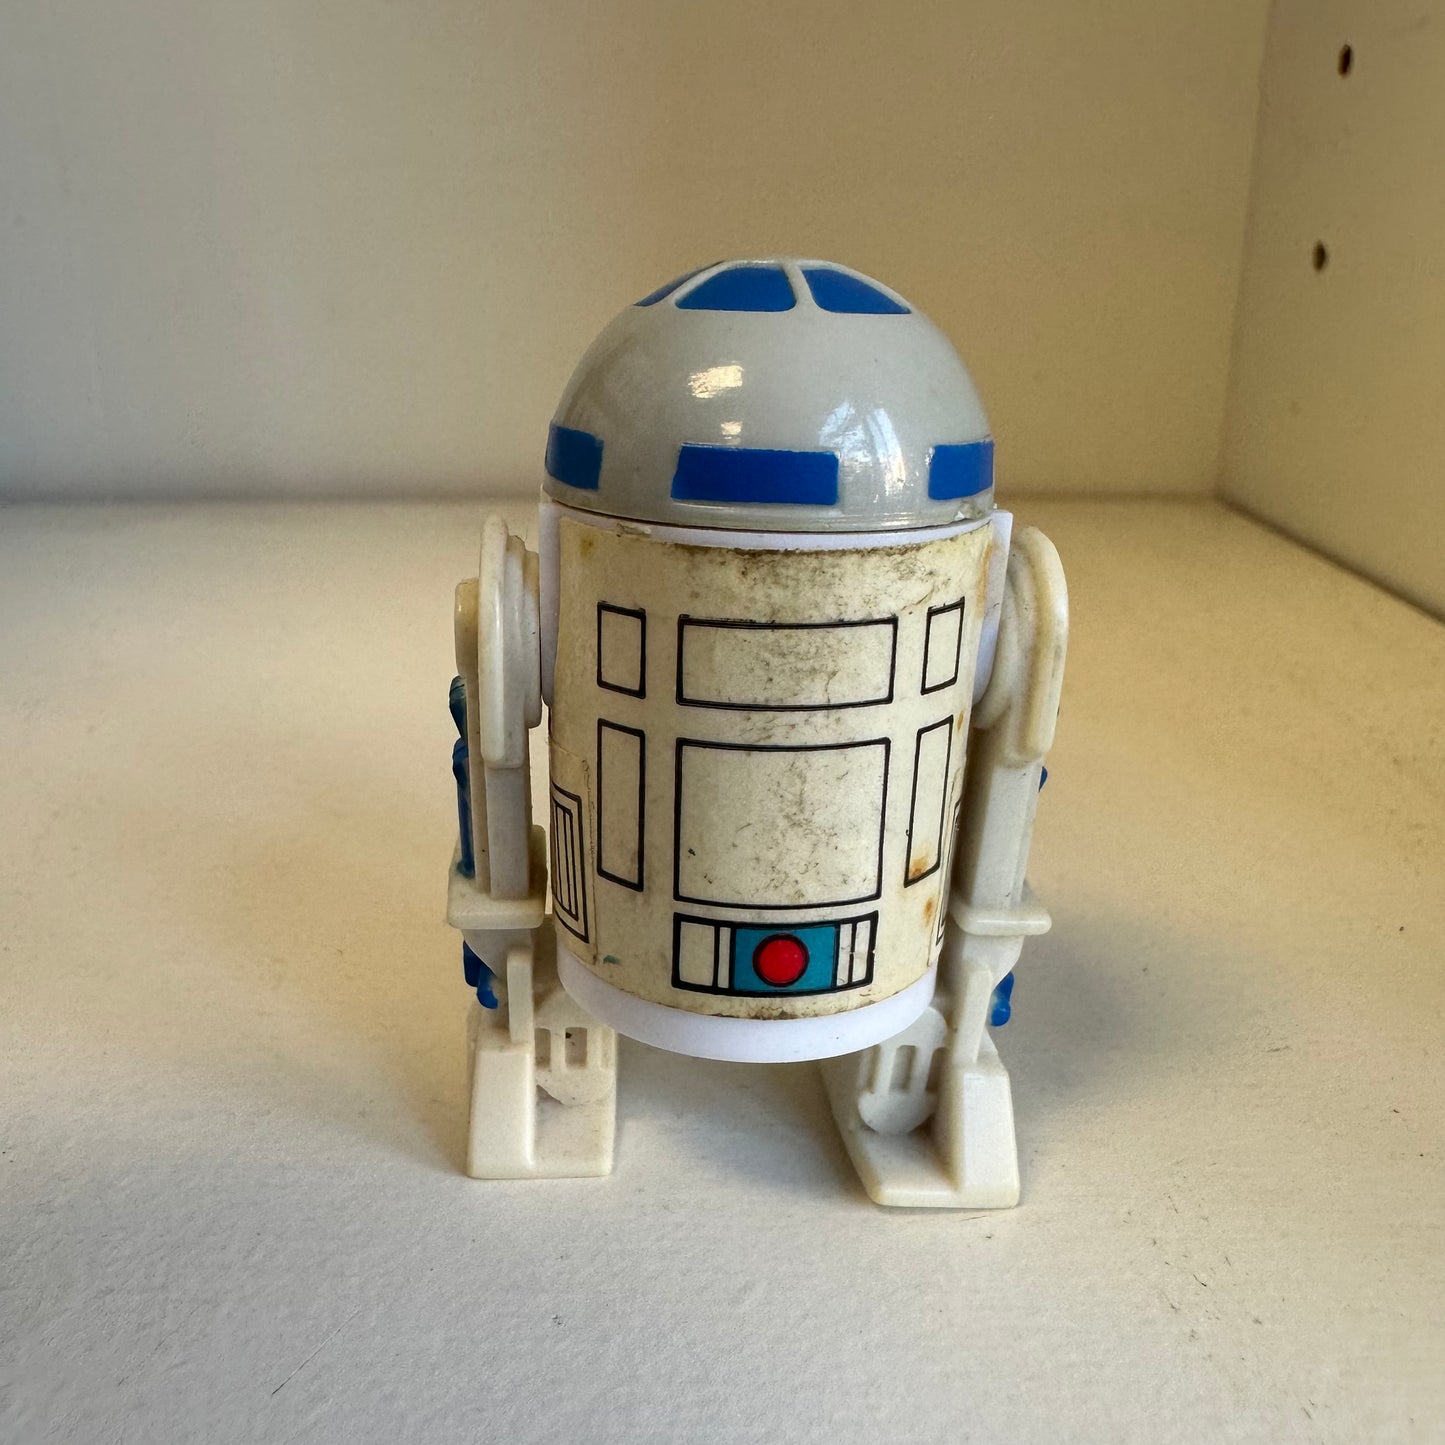 1985 Kenner Droids R2-D2 Star Wars Action Figure Vintage